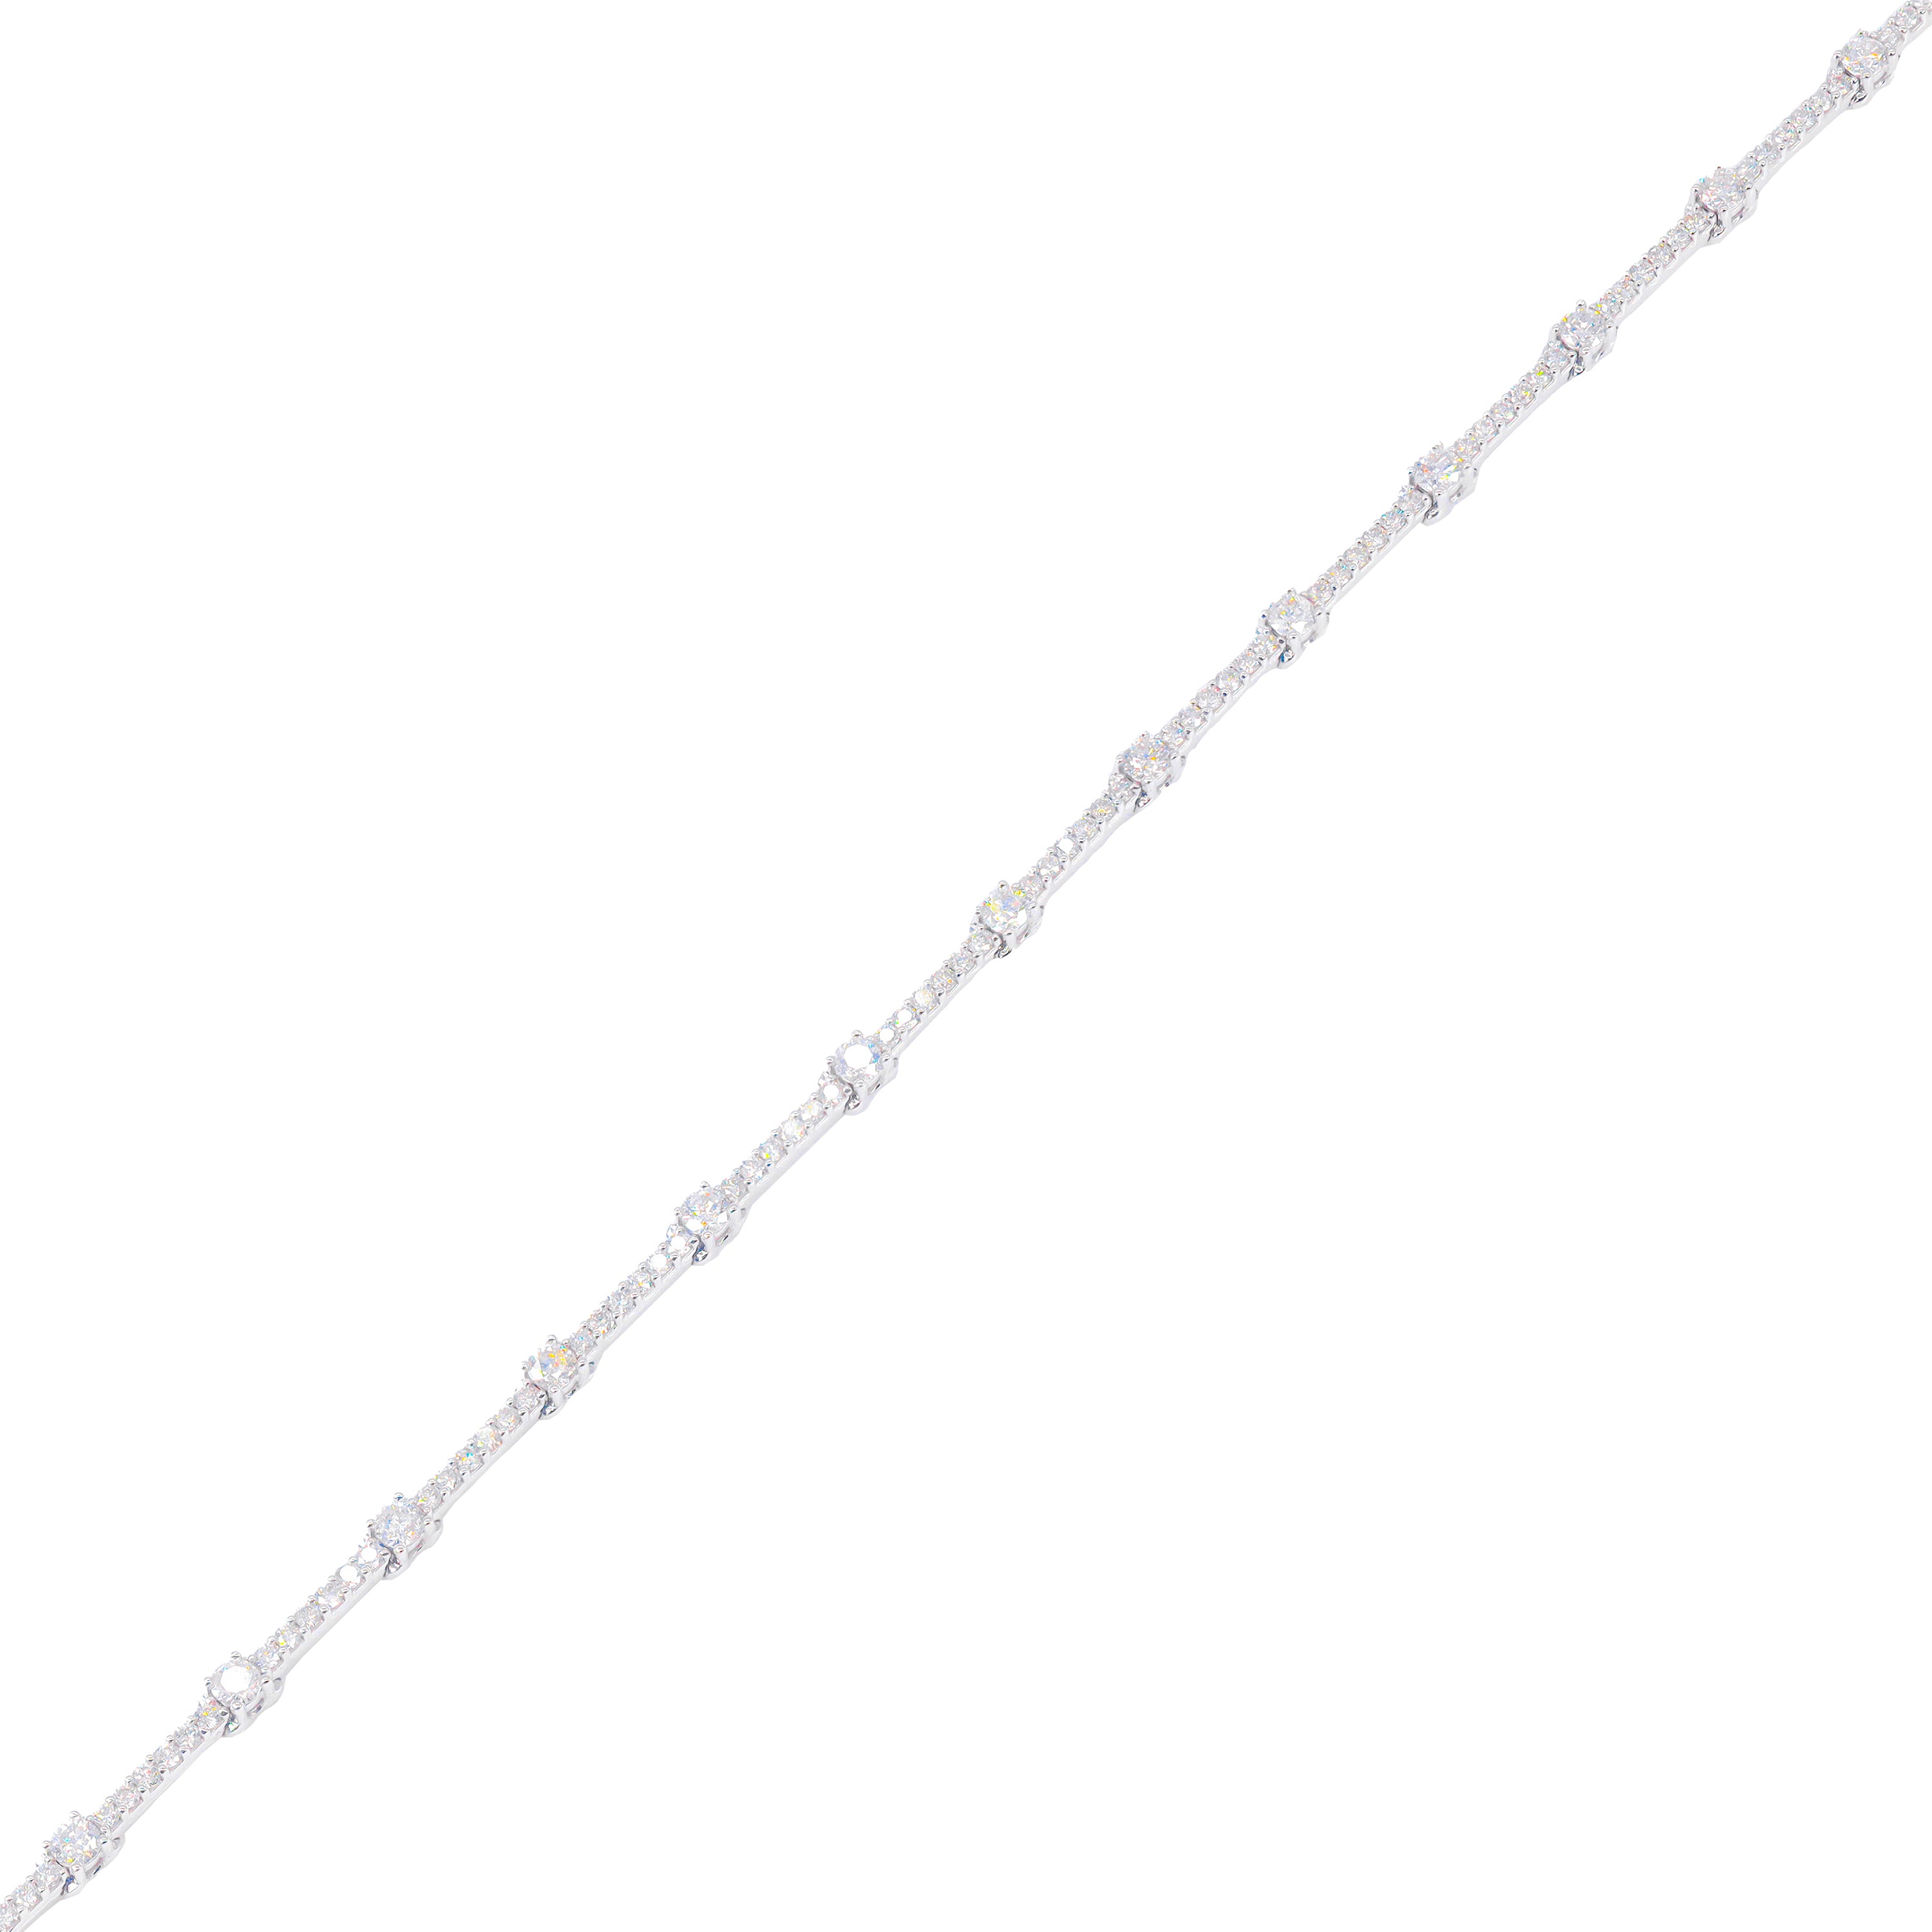 Round Diamond Tennis Bracelet with 6-Pointer Diamond Links